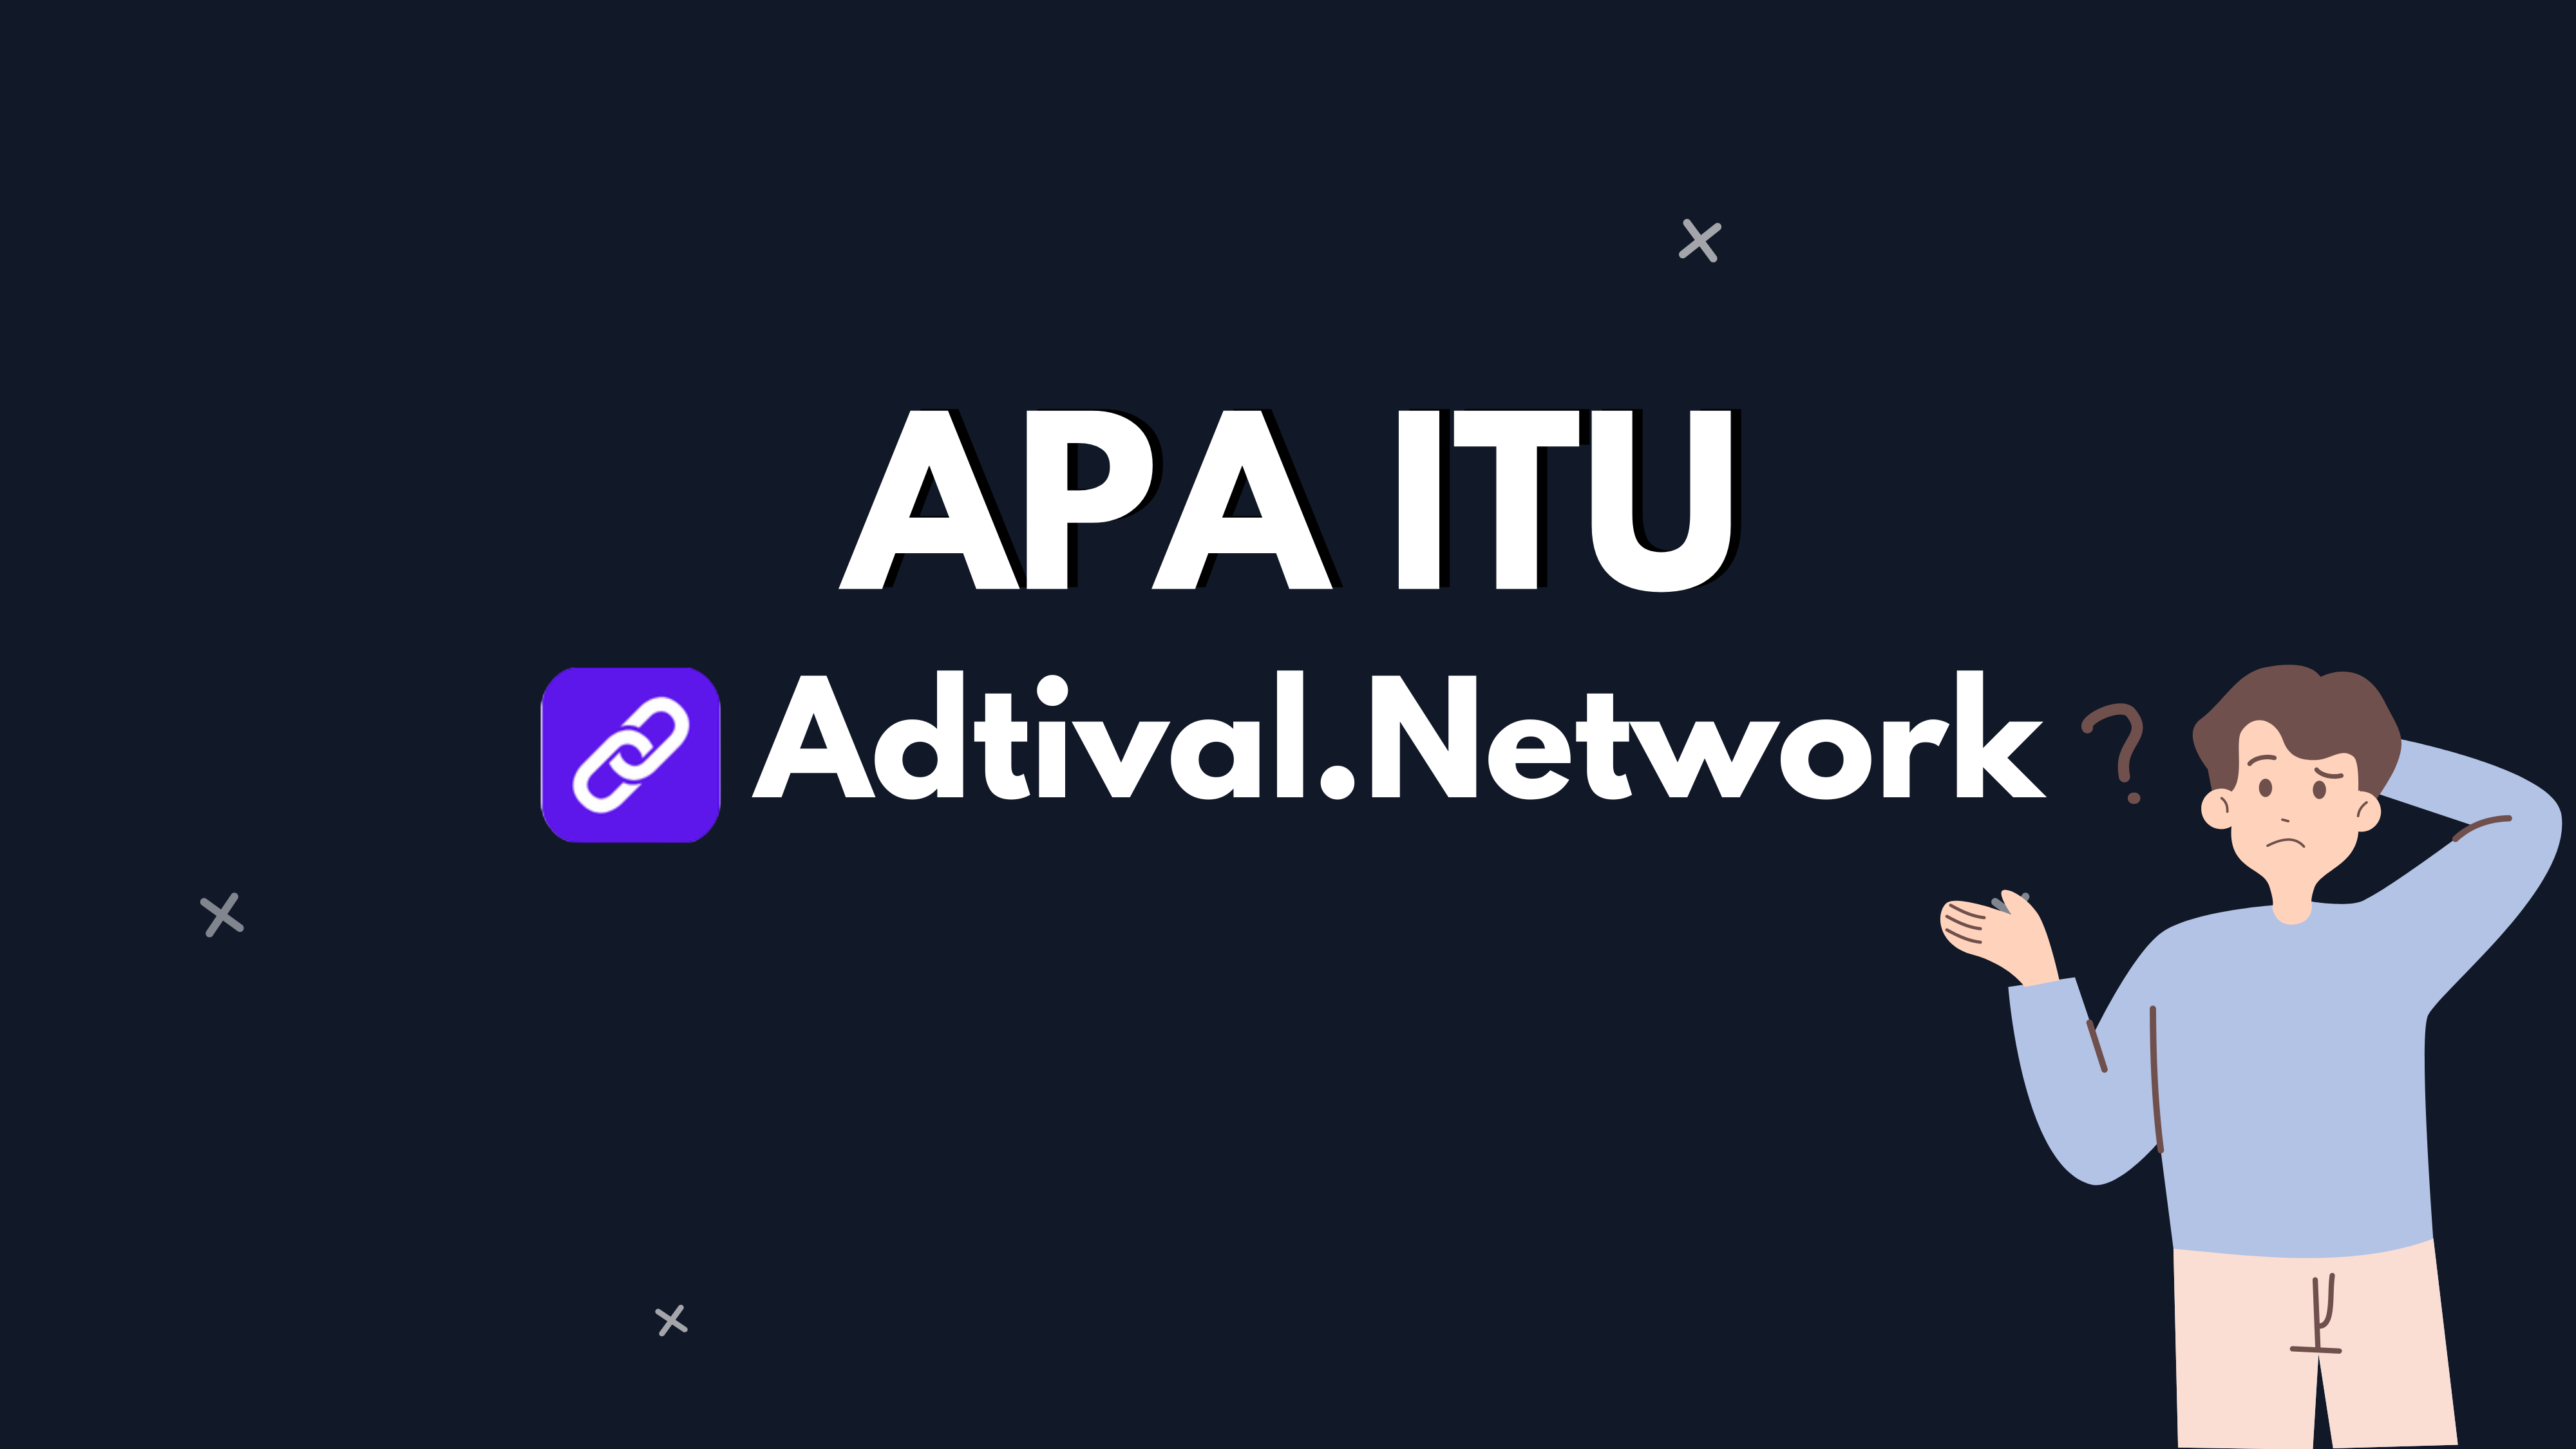 Apa itu Adtival Network